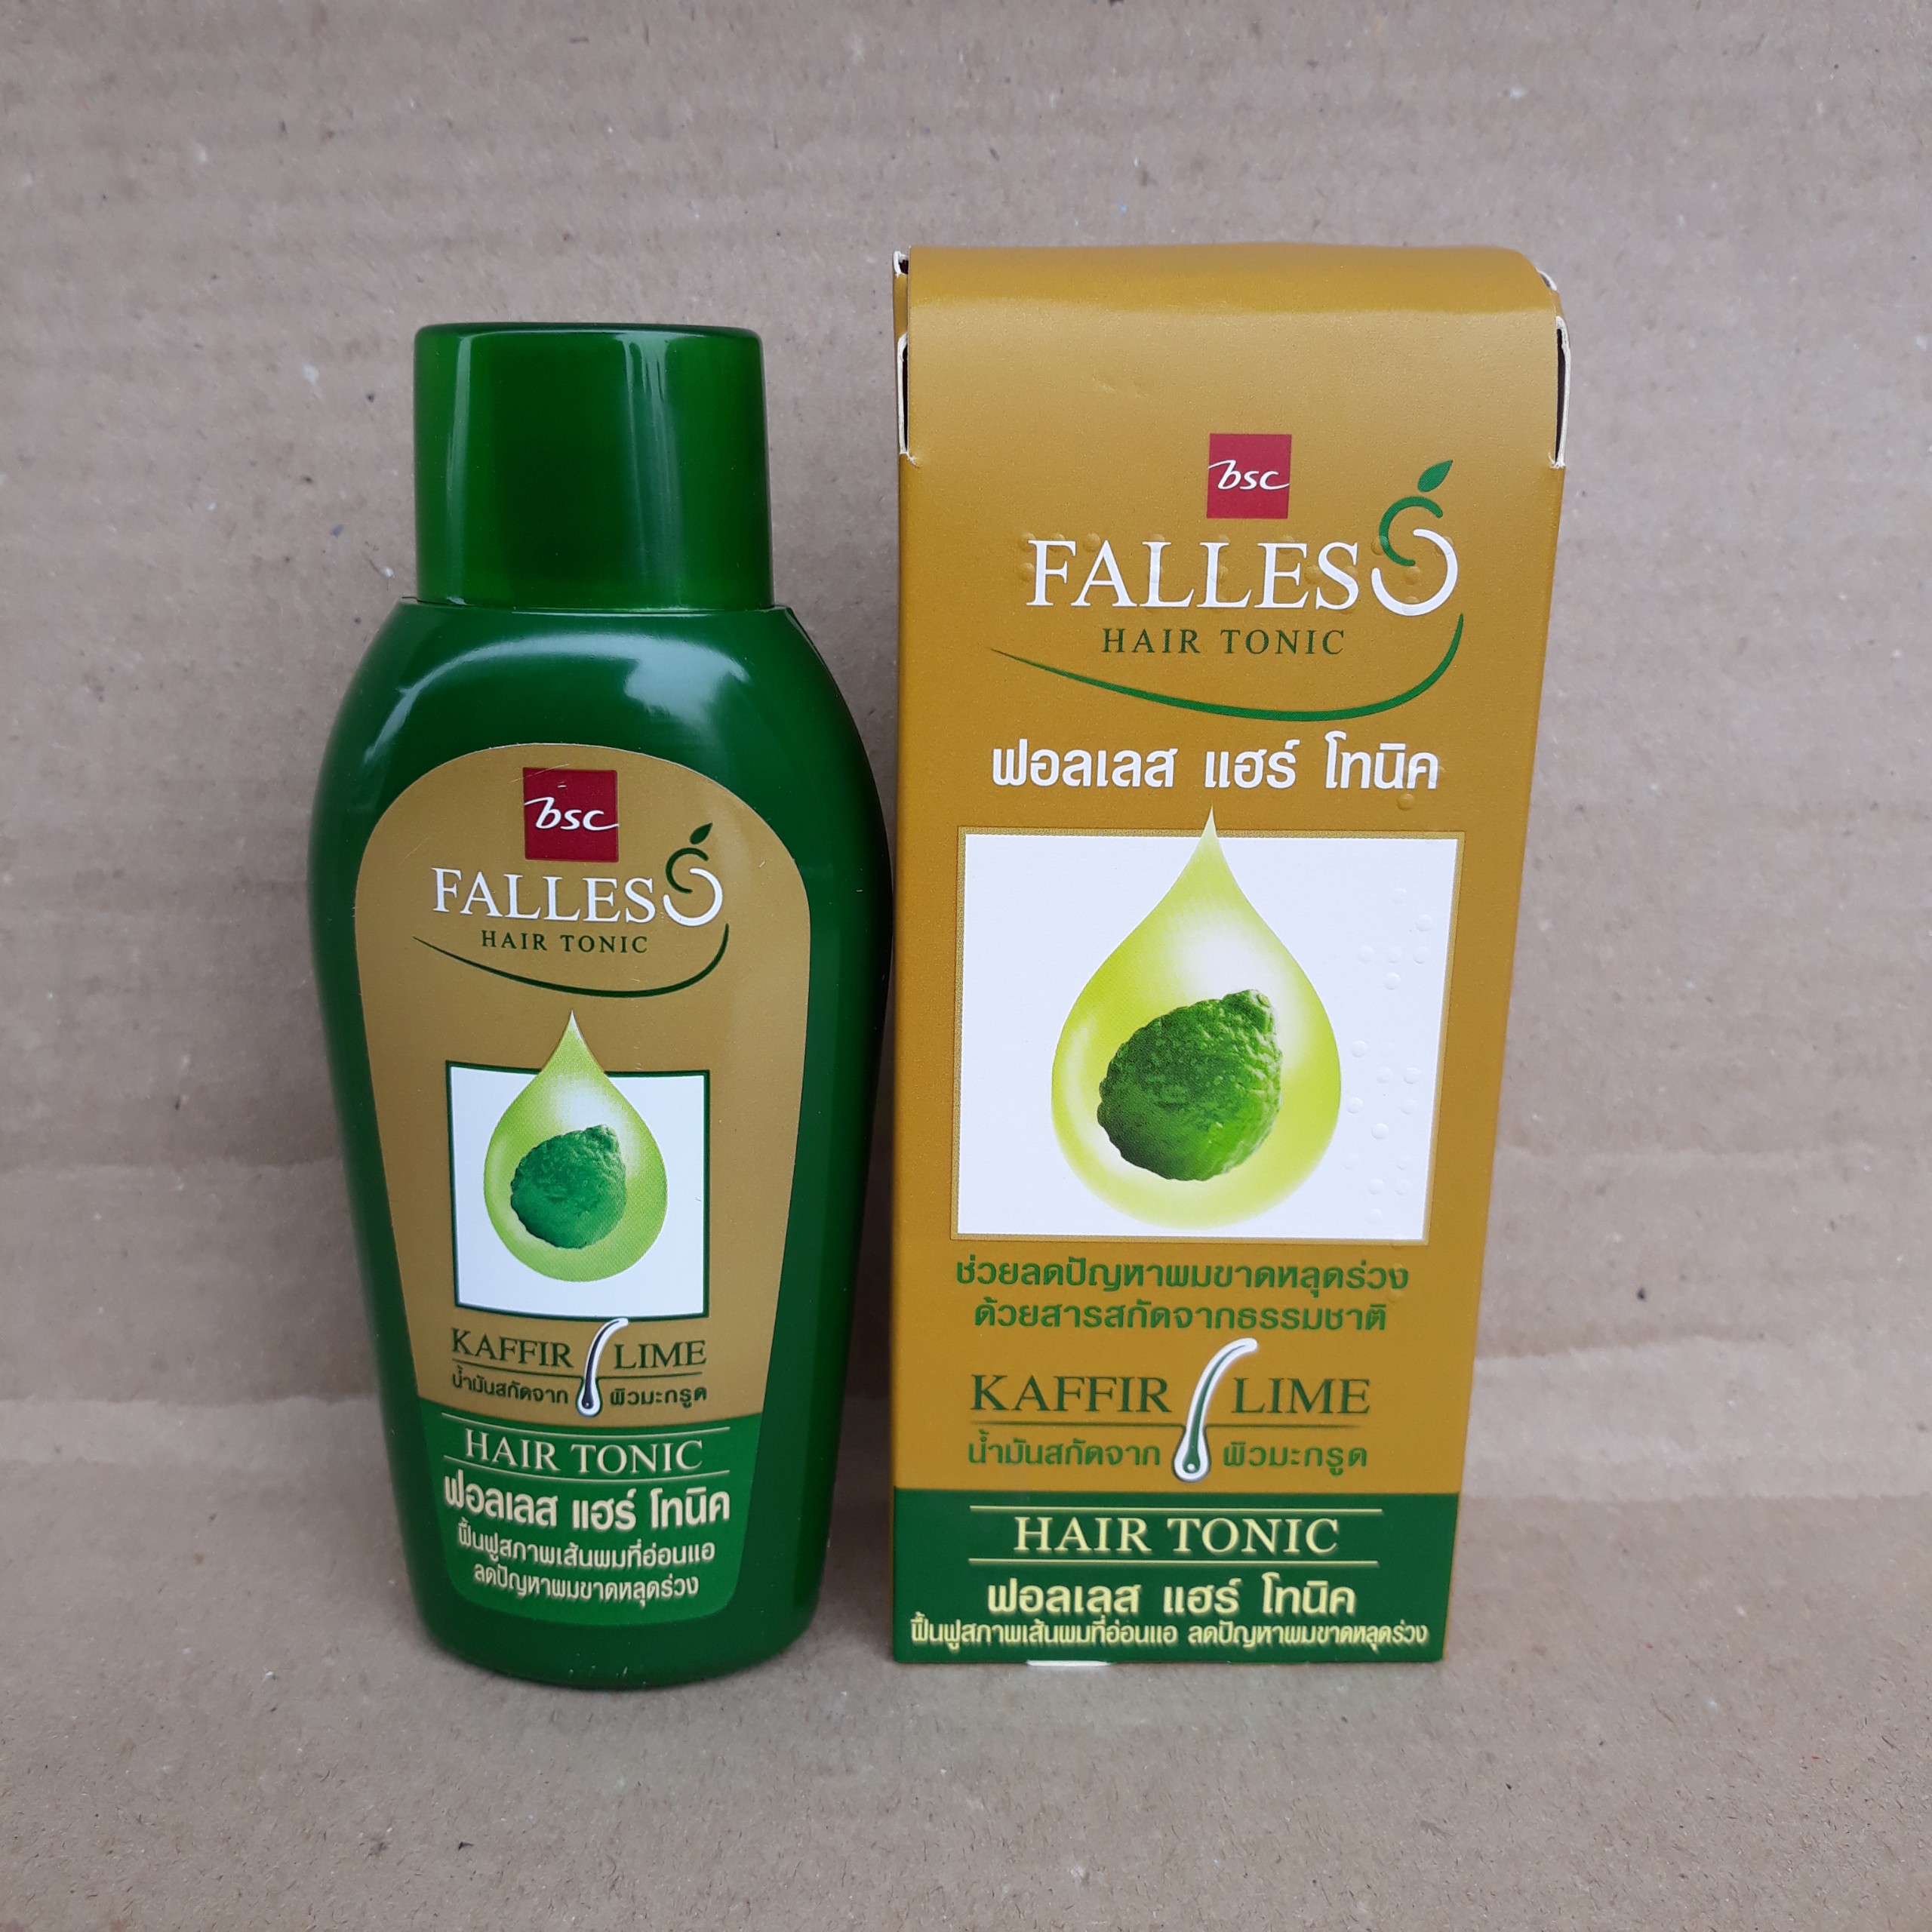 Dầu dưỡng tóc Falless 90ml (kích thích mọc tóc)